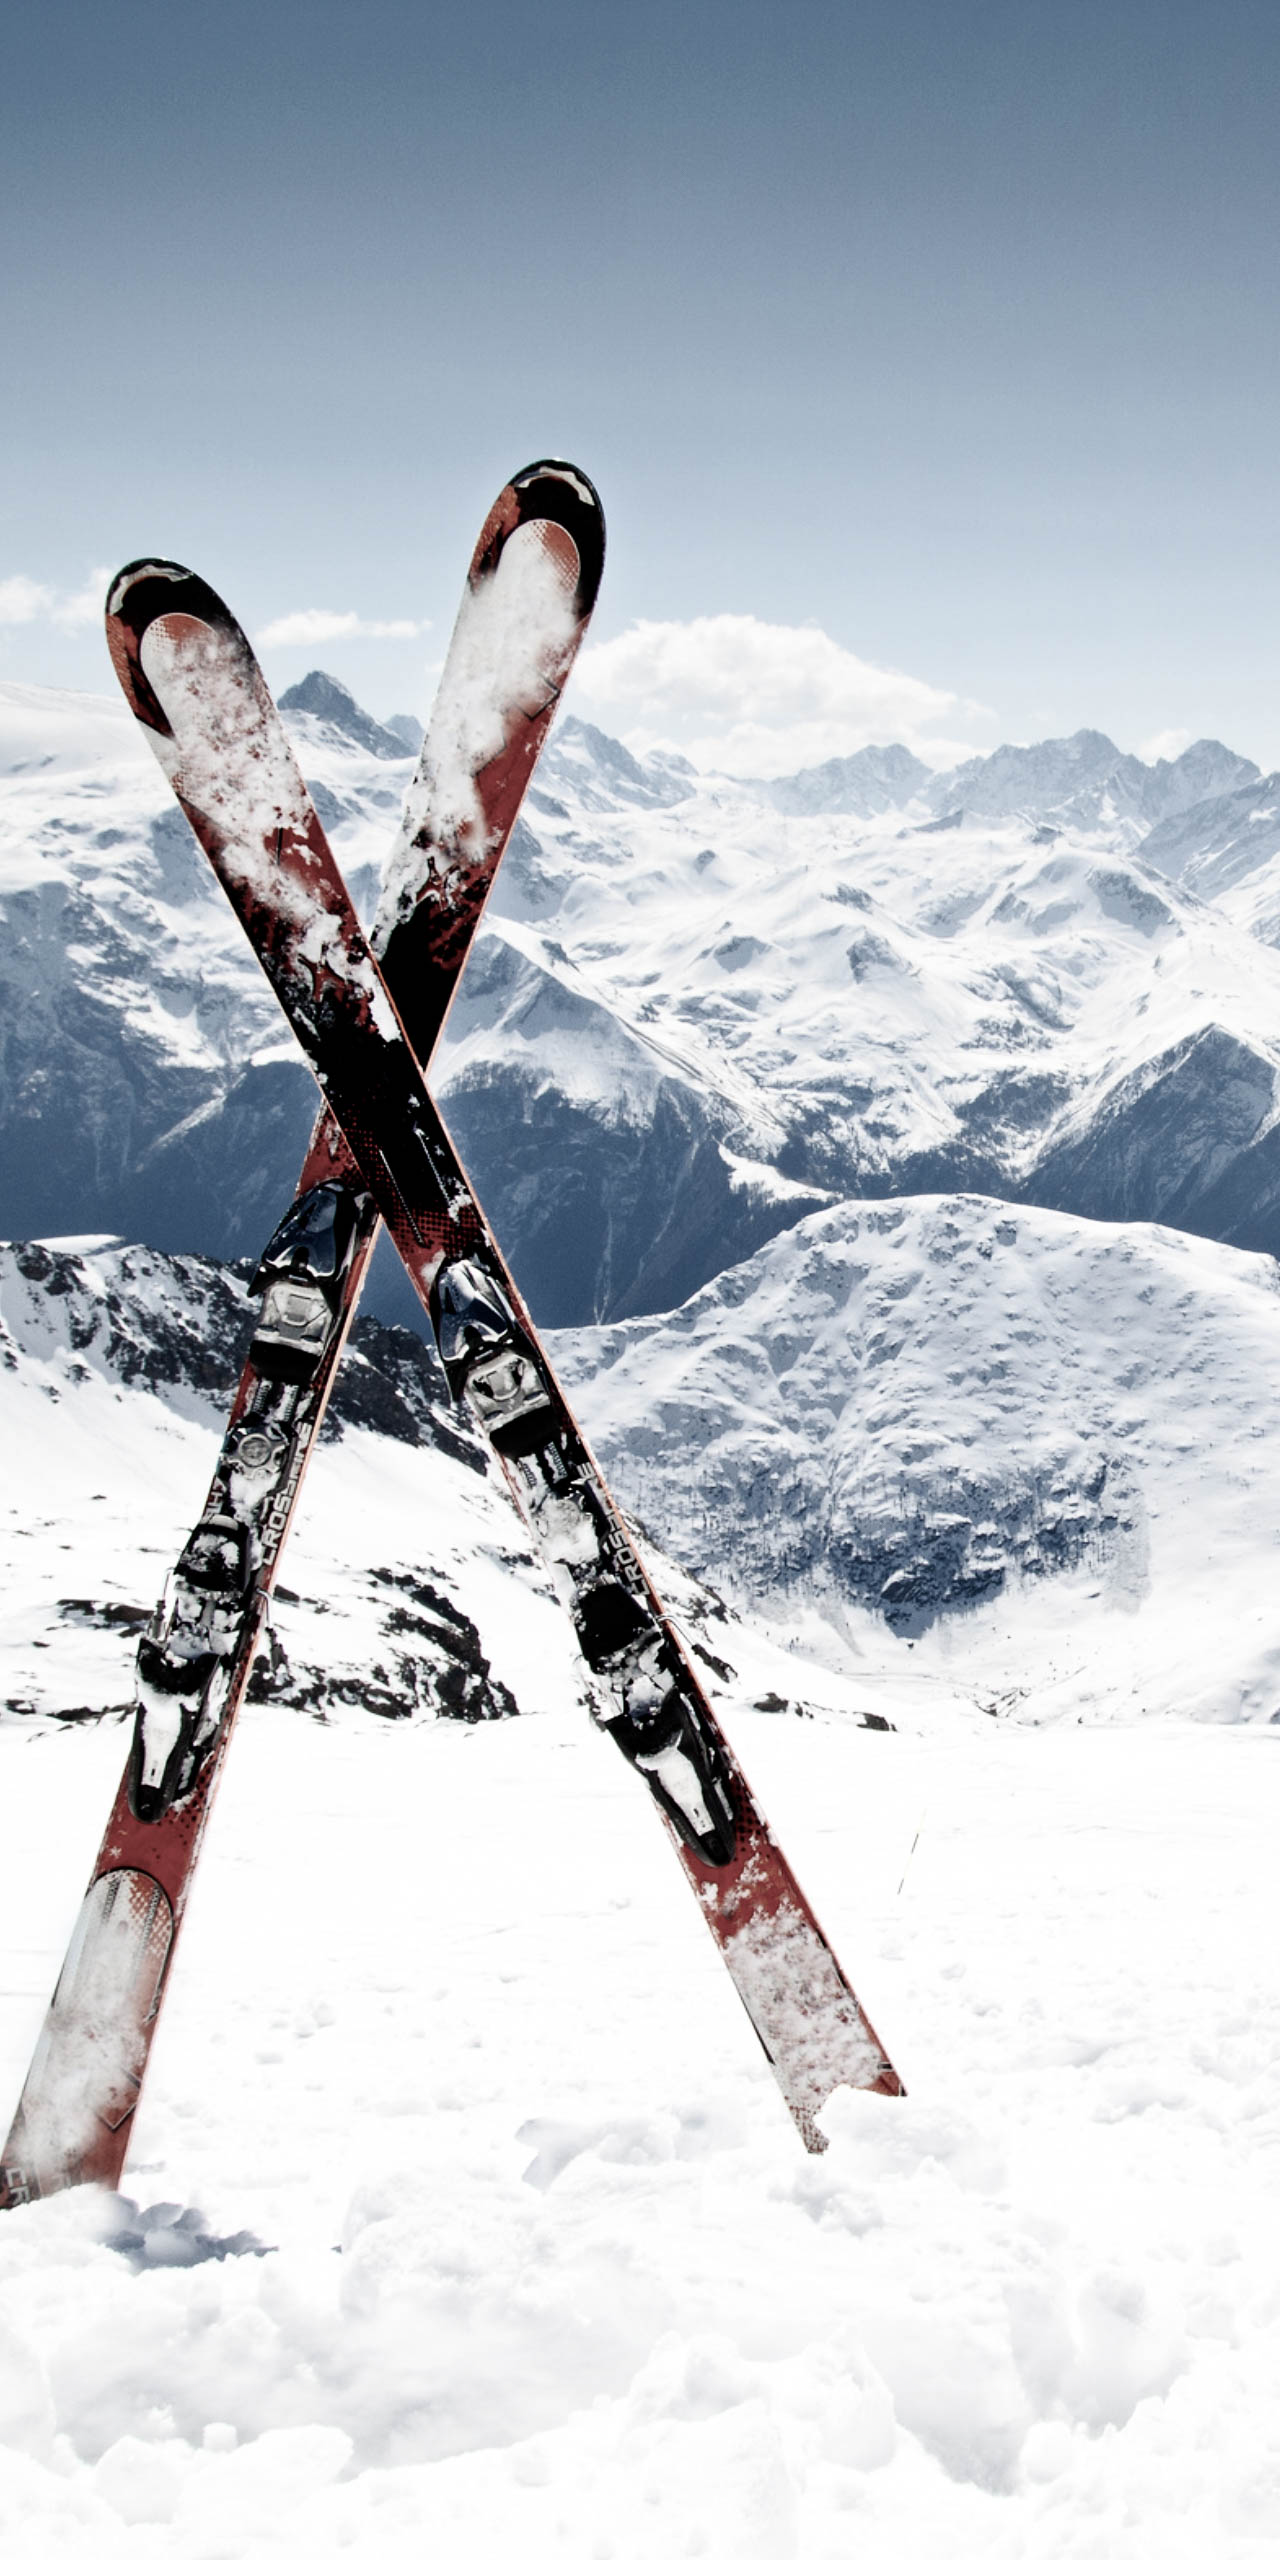 The Alps Ski Resorts Skis in snow